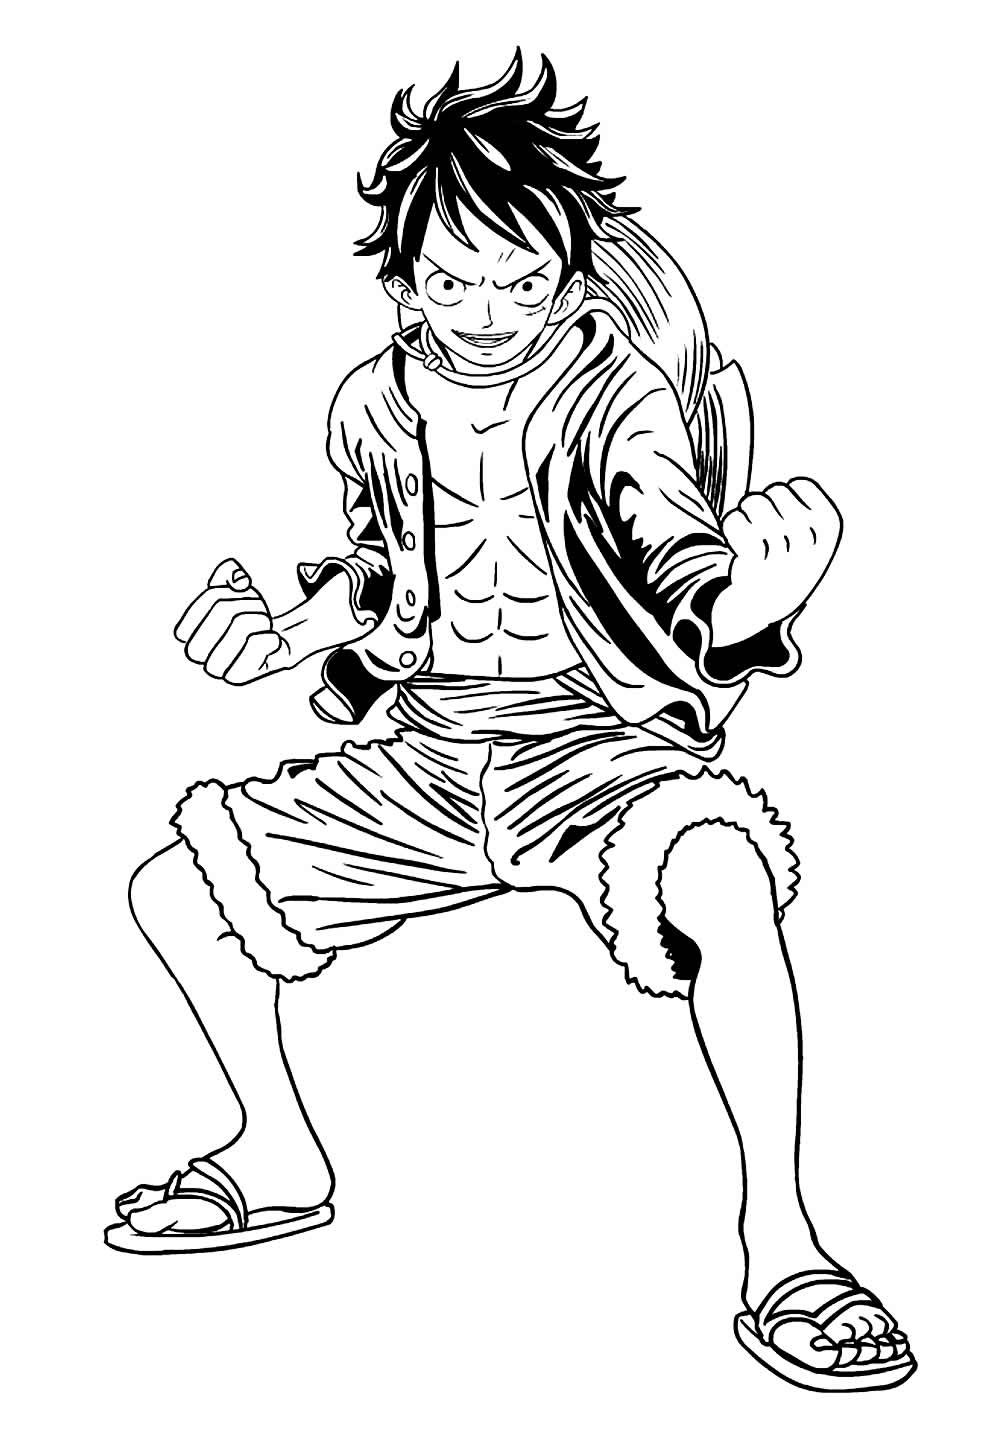 Desenho do Luffy para pintar